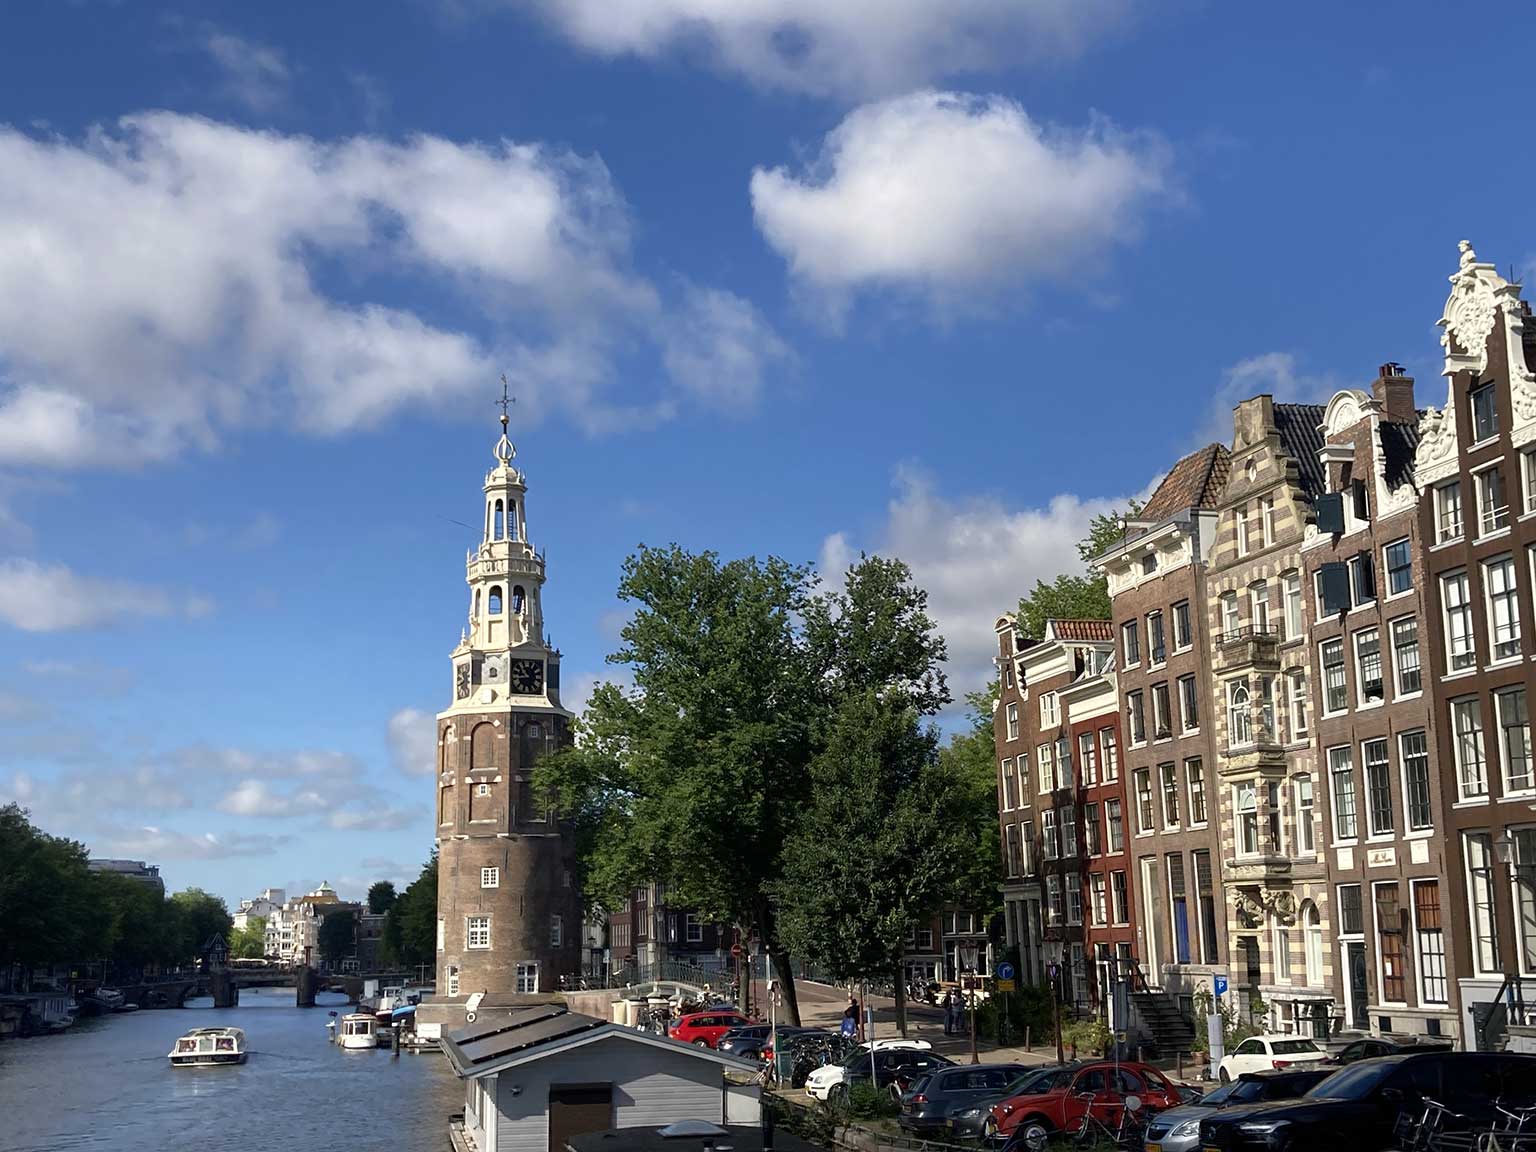 Oudeschans and Montelbaanstoren, Amsterdam, seen from Kikkerbilsluis bridge